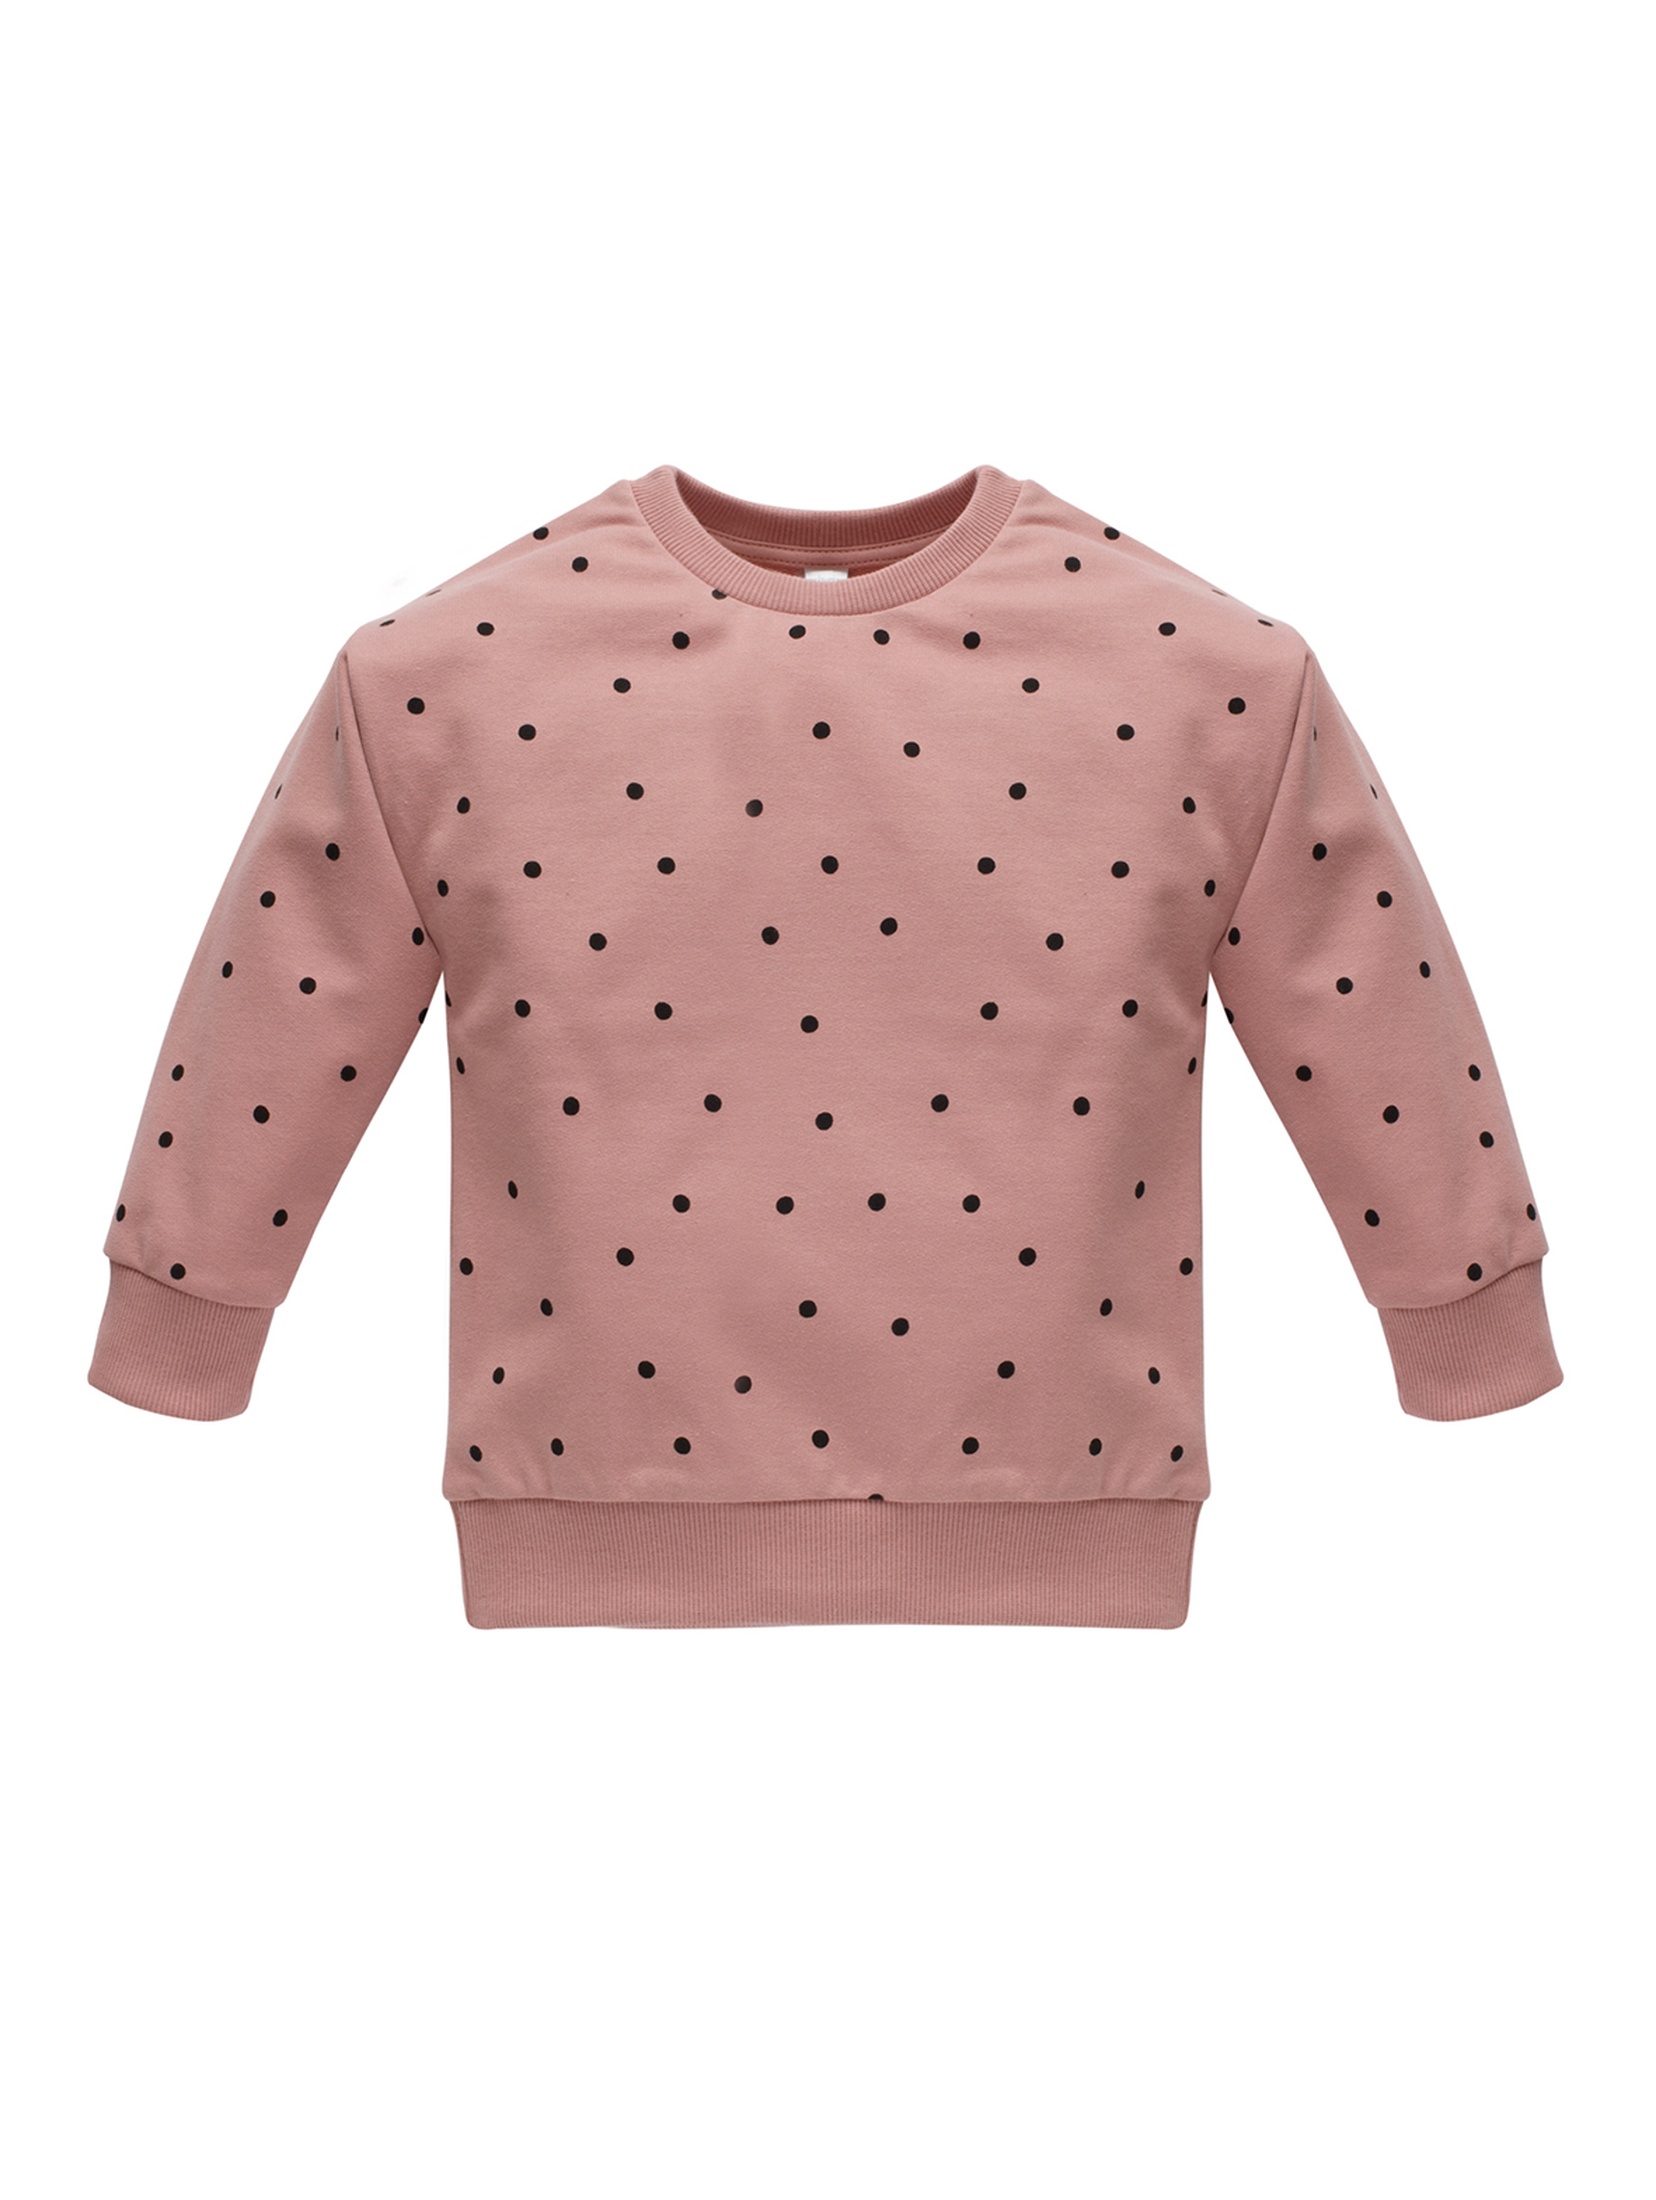 Bluza dla dziewczynki nierozpinana - różowa w groszki TRES BIEN - Pinokio